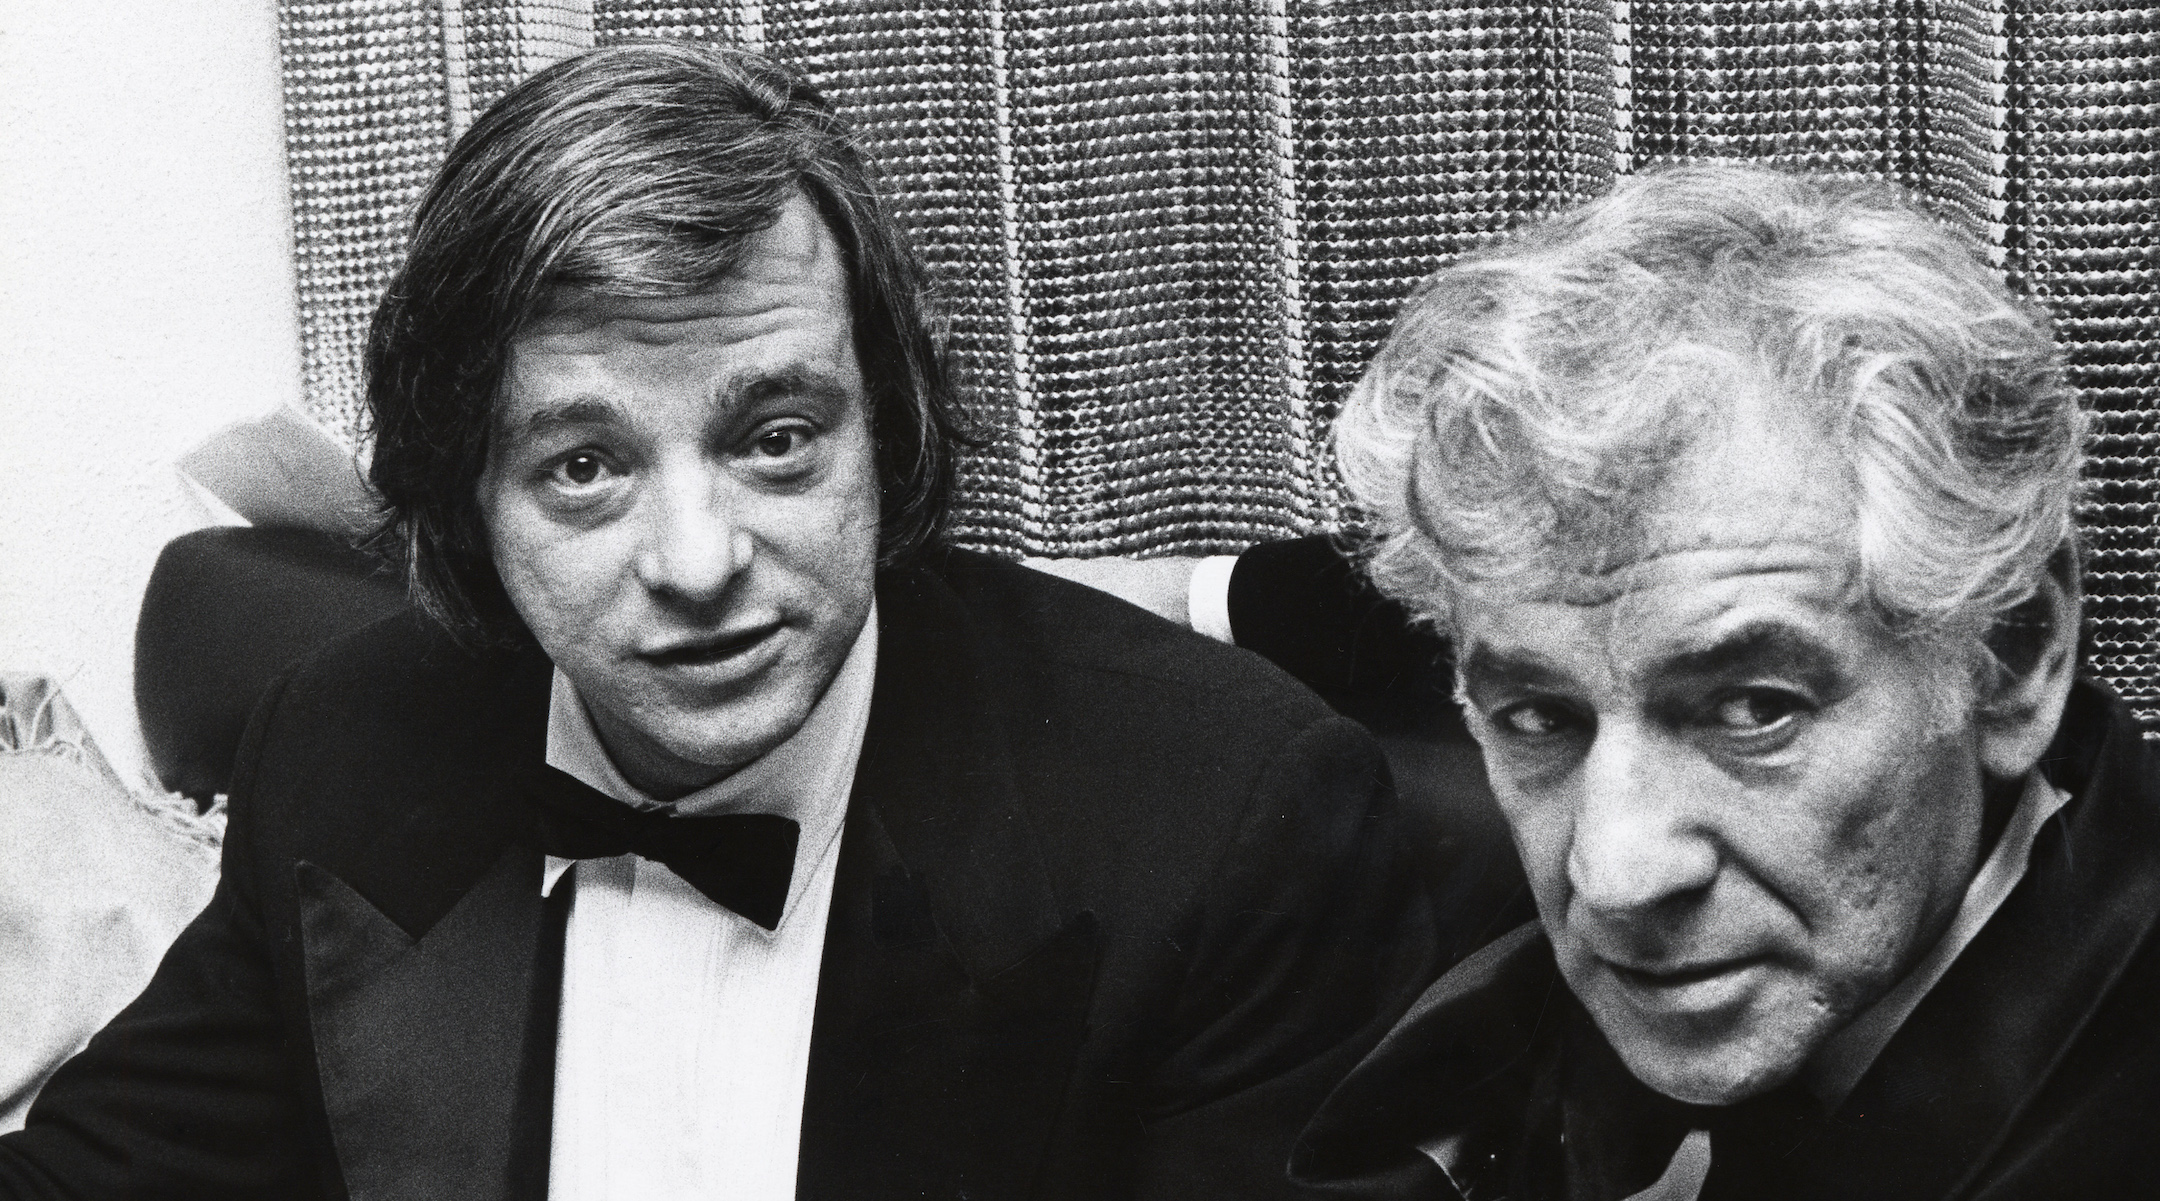 Stephen Sondheim, left, with Leonard Bernstein